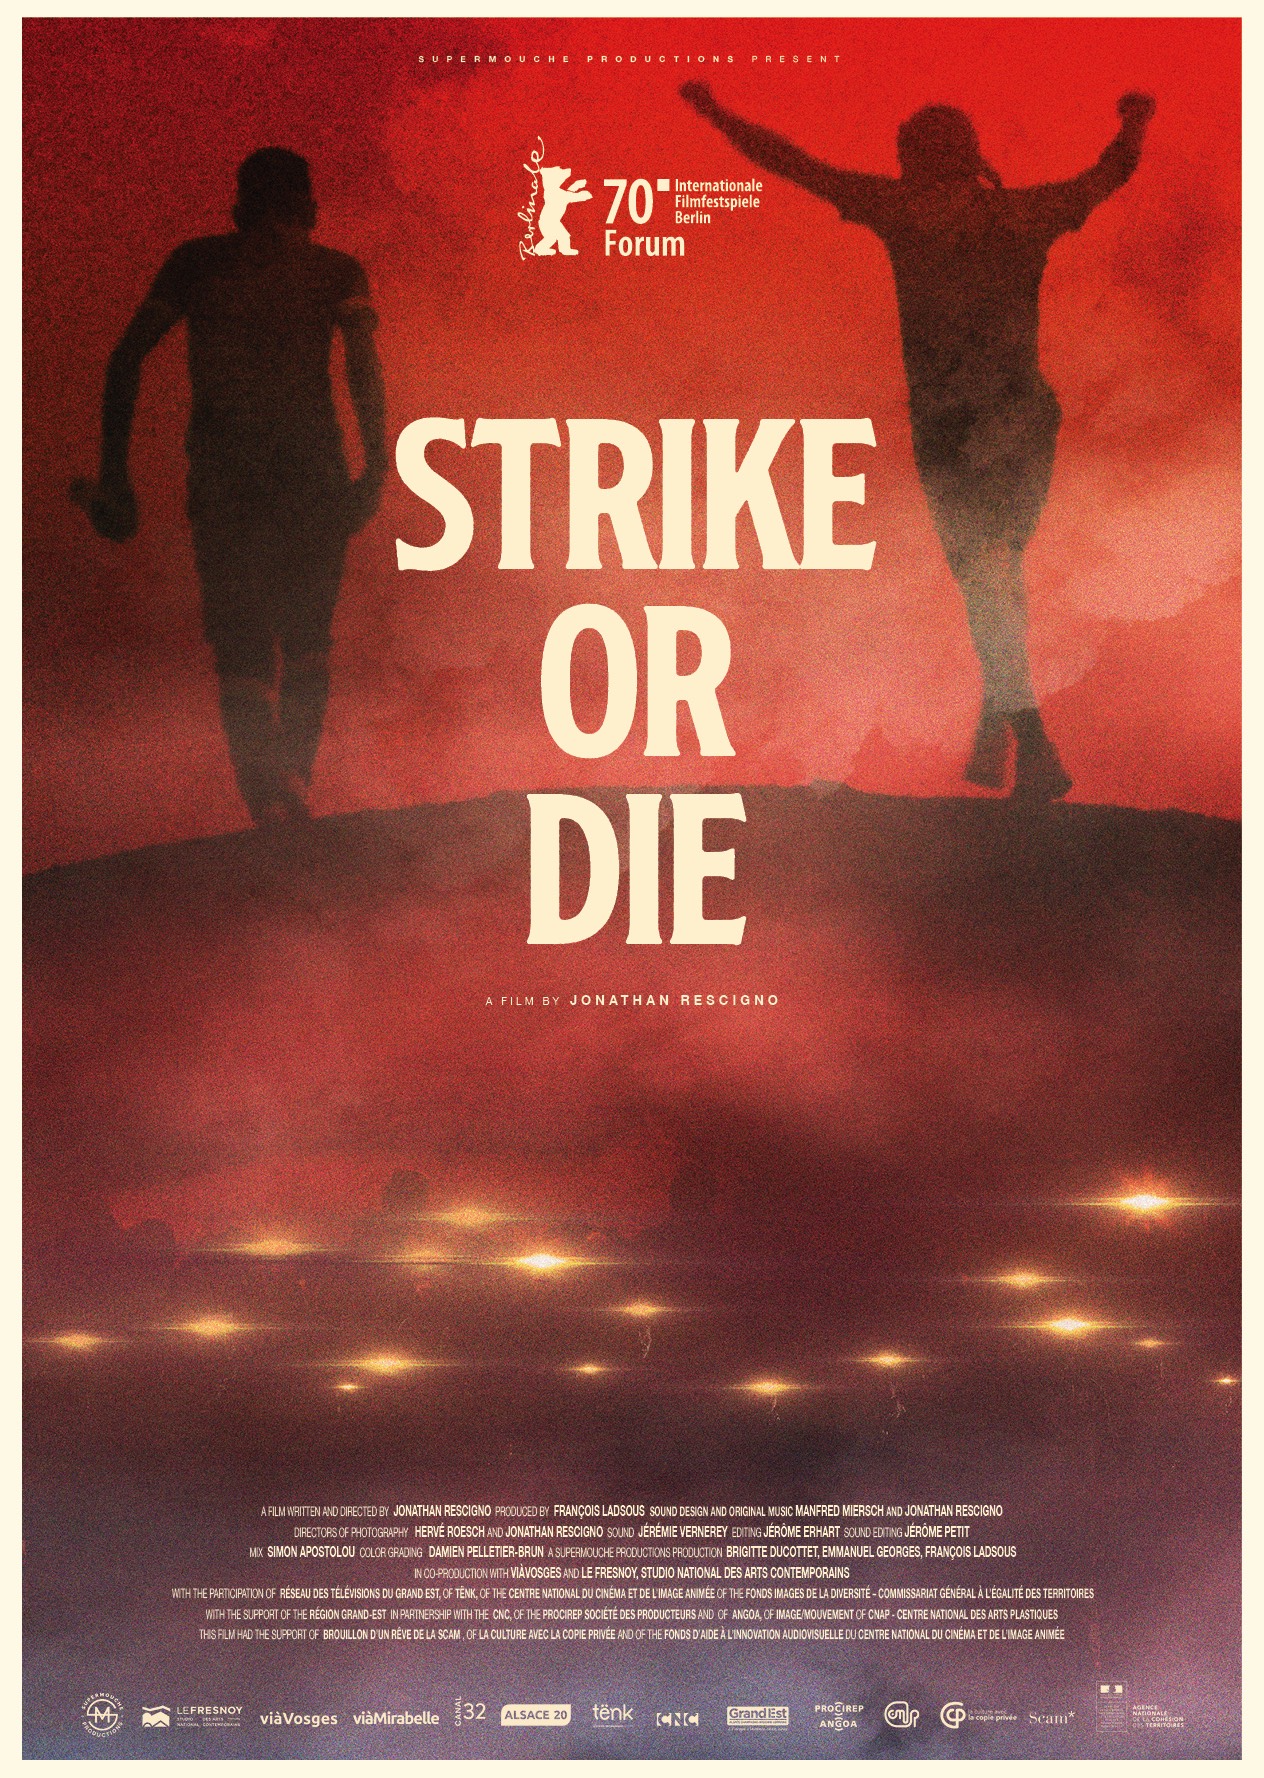 Strike or die